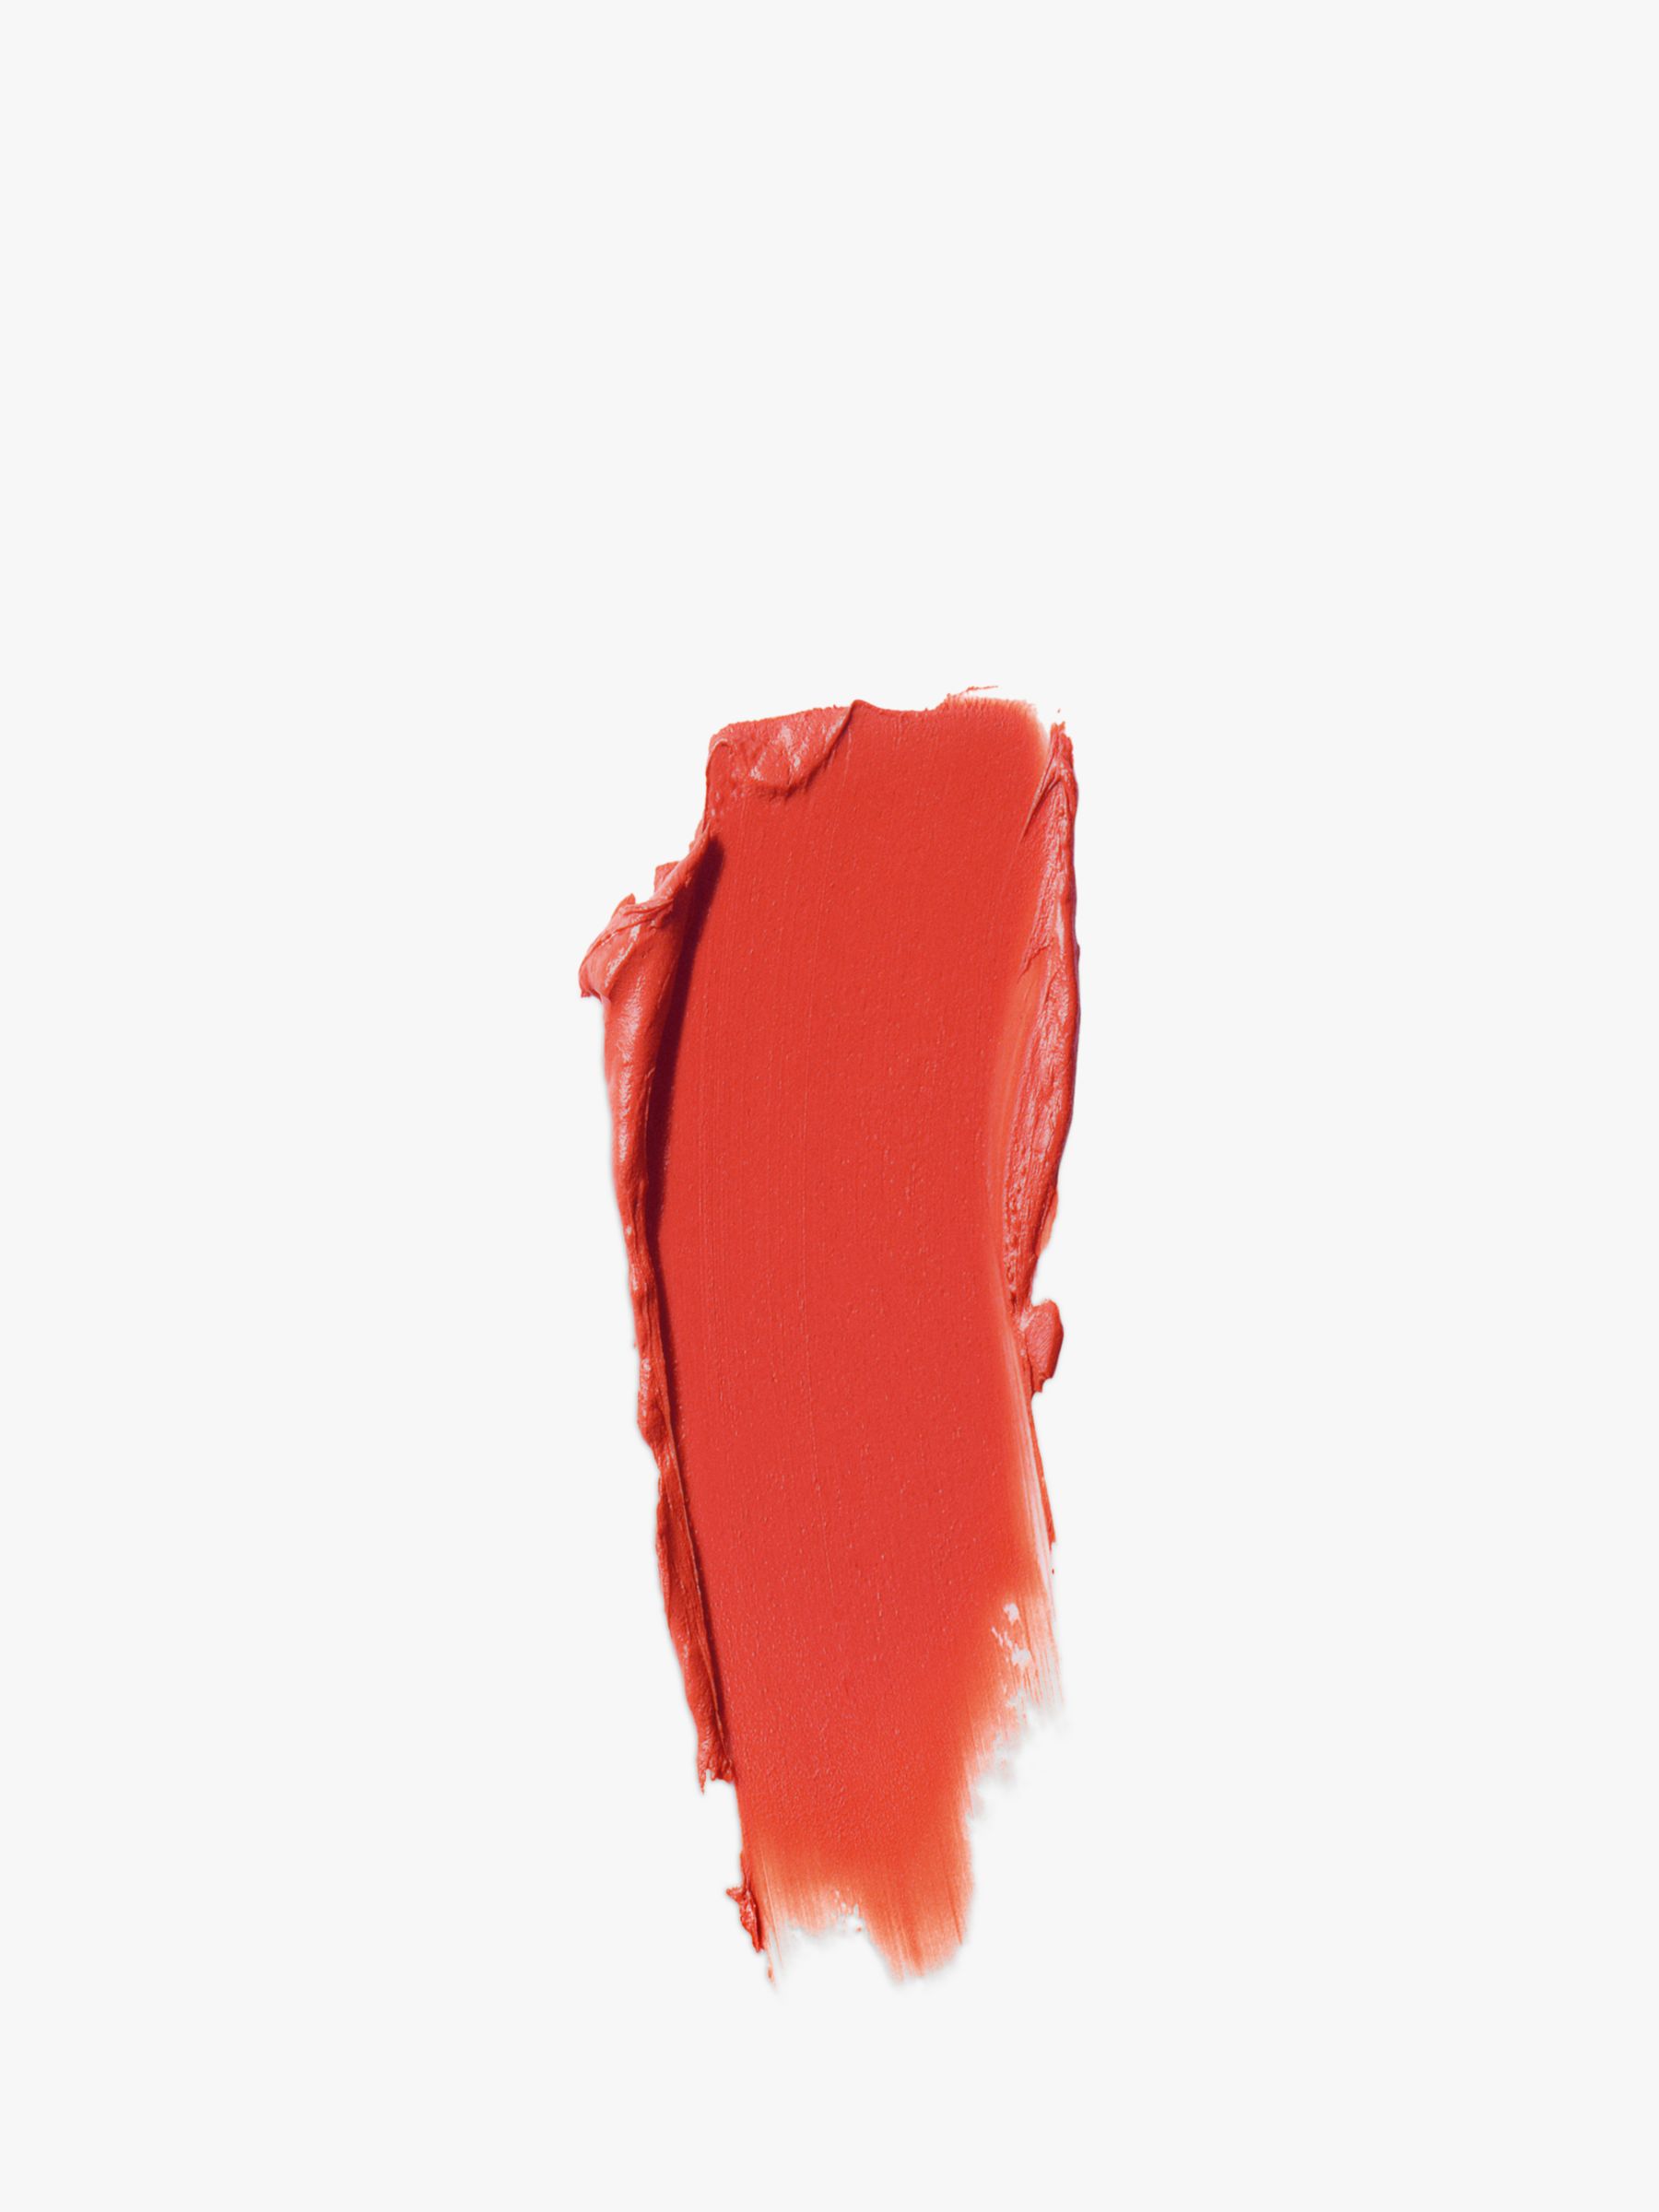 Gucci Rouge À Lèvres Matte Lipstick, 302 Agatha Orange 2